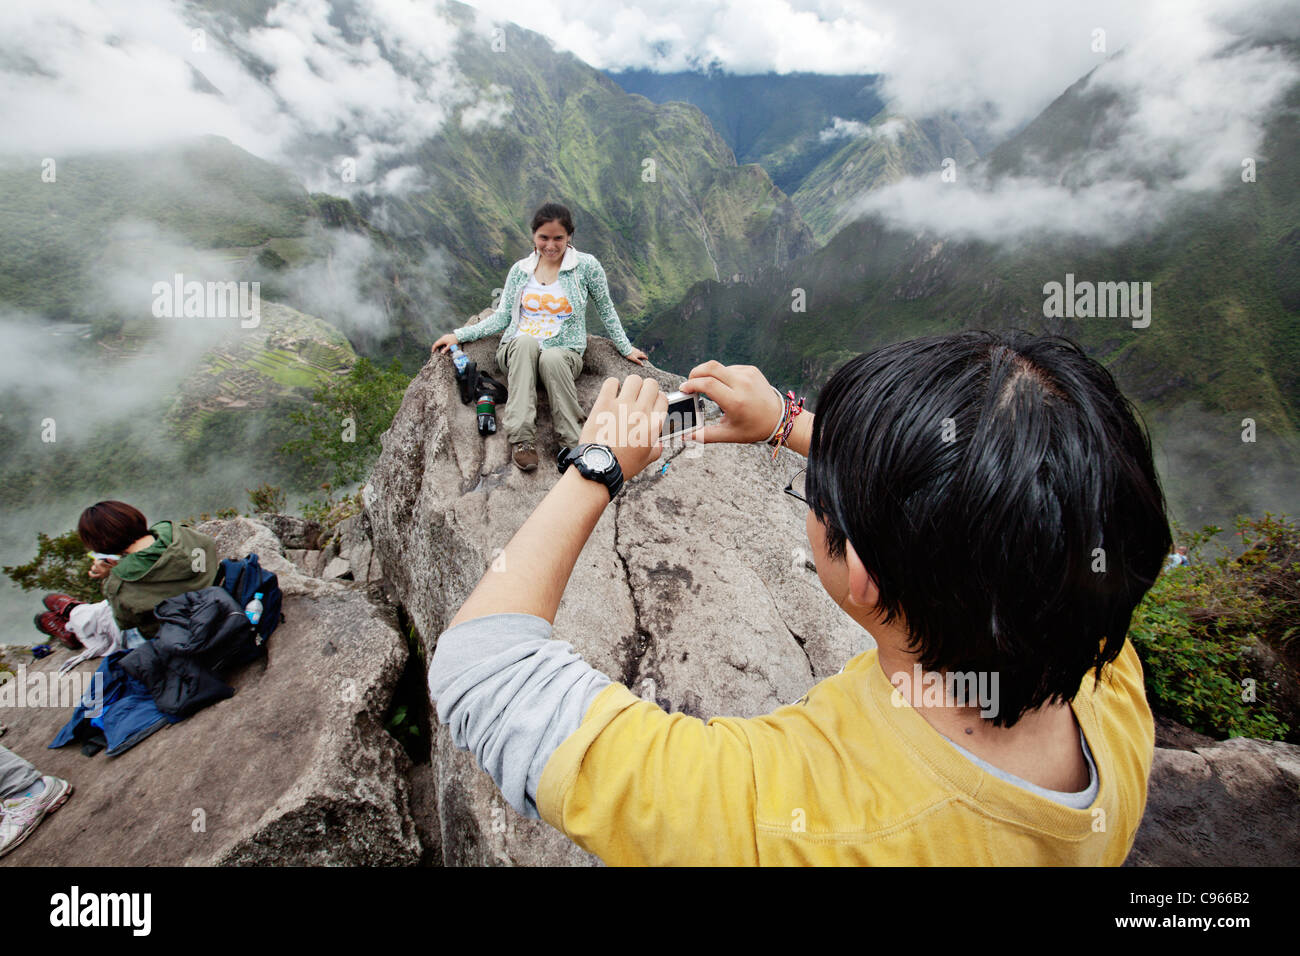 Los turistas tomando fotos en el Wayna Picchu montaña. En el fondo de la ciudadela de Machu Picchu, el sitio turístico más conocido en los Andes. Foto de stock